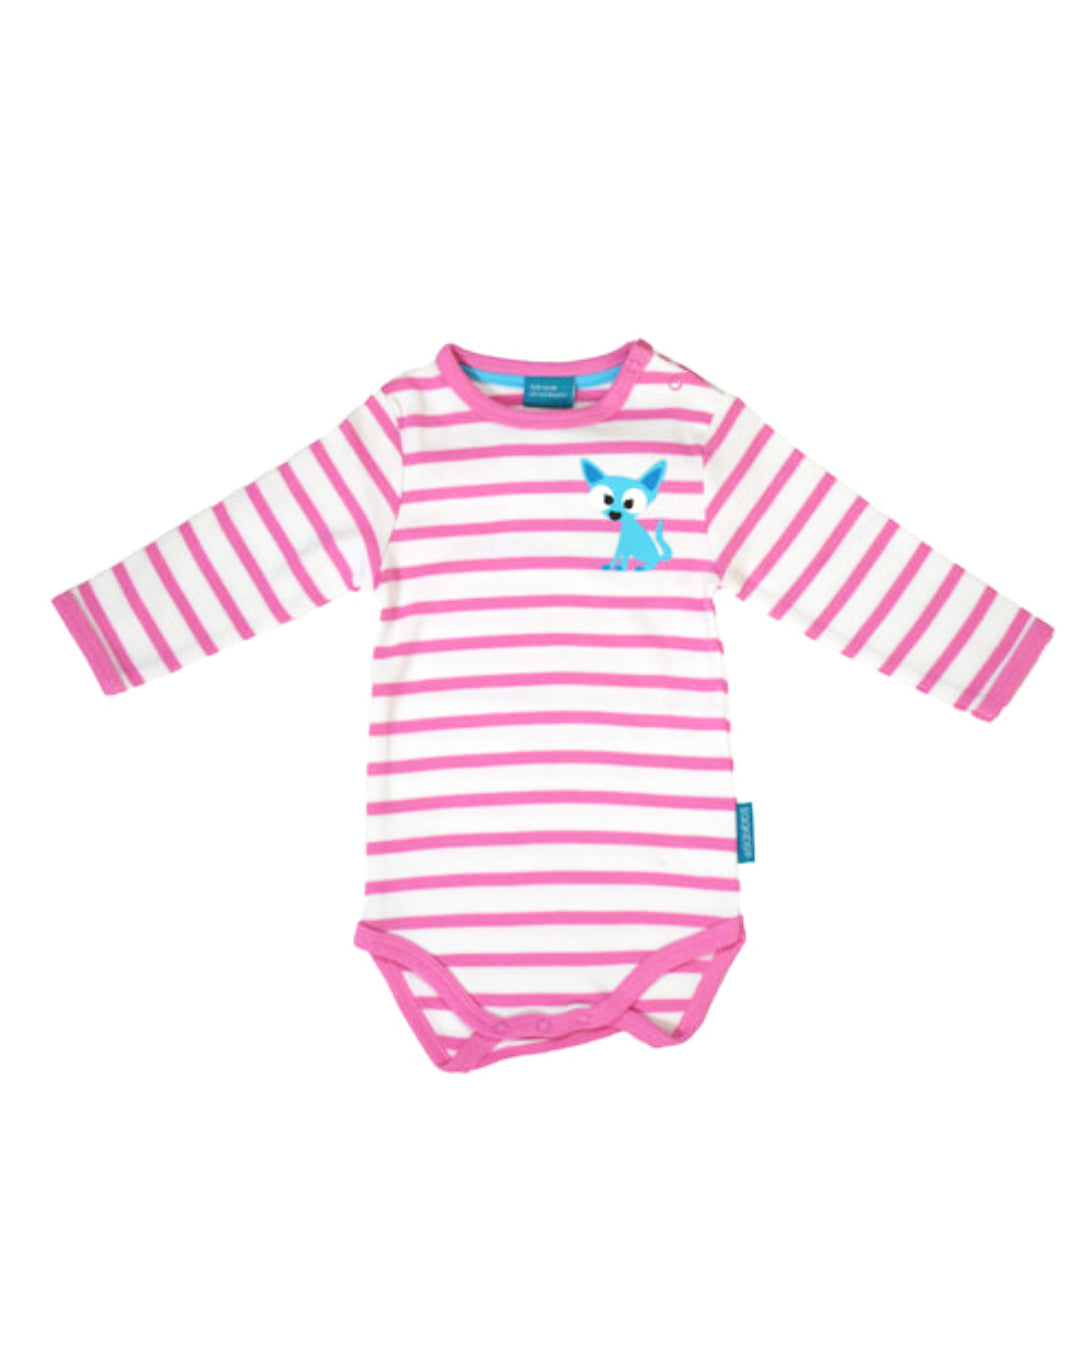 Langarm Babybody in Weiß mit rosa Streifen und blauem Fuchs Print